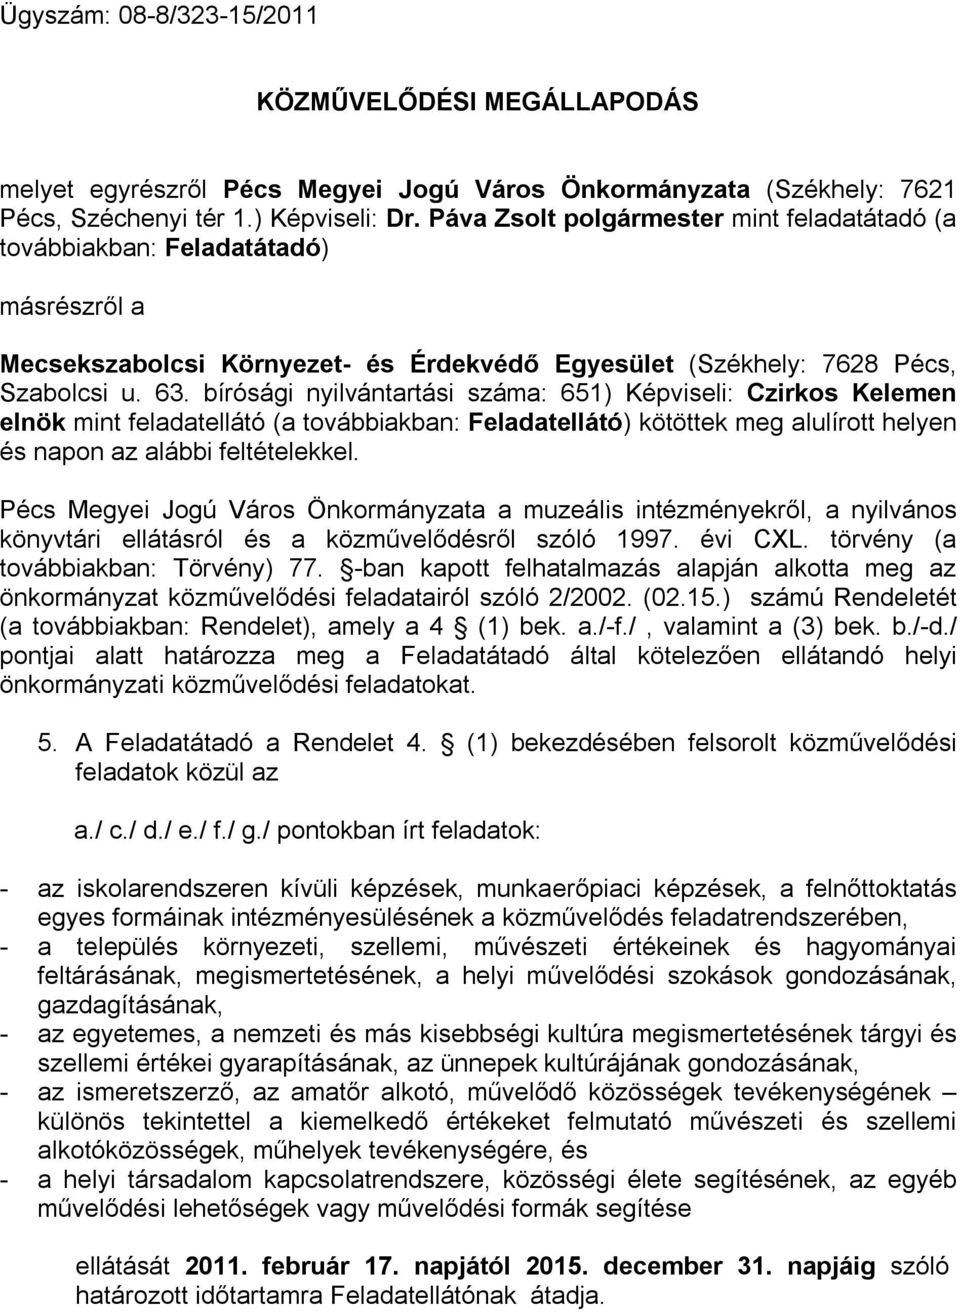 bírósági nyilvántartási száma: 651) Képviseli: Czirkos Kelemen elnök mint feladatellátó (a továbbiakban: Feladatellátó) kötöttek meg alulírott helyen és napon az alábbi feltételekkel.